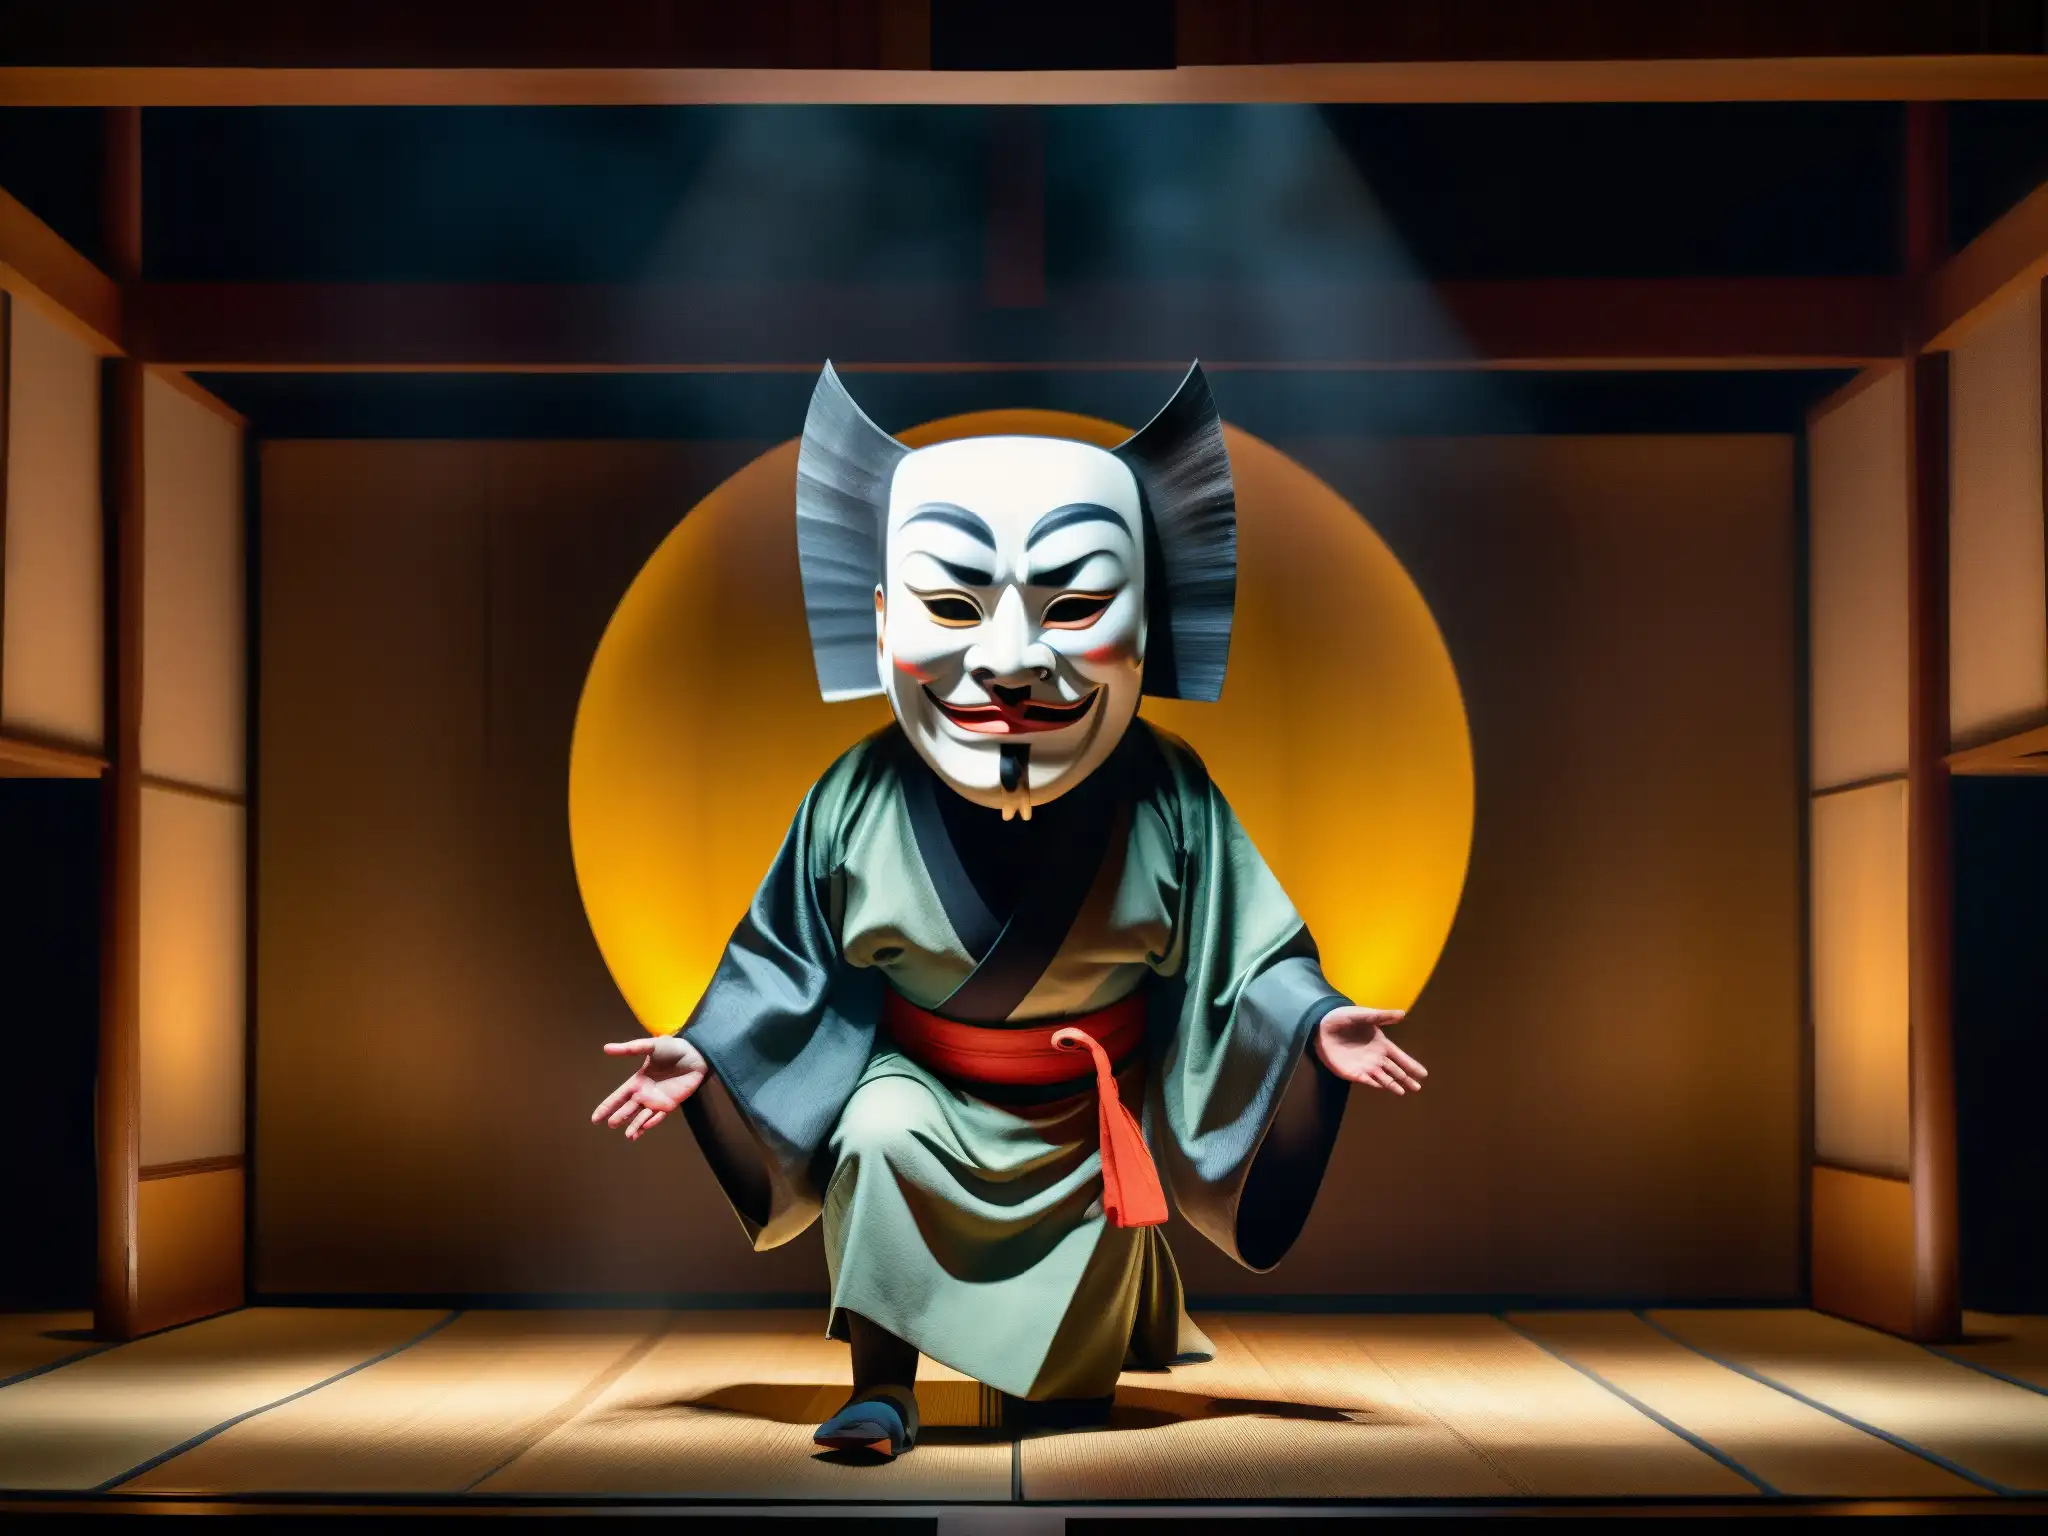 Imagen 8k detallada de un teatro Noh japonés con la aterradora máscara Hanya, escenario con atmósfera de terror y fascinación